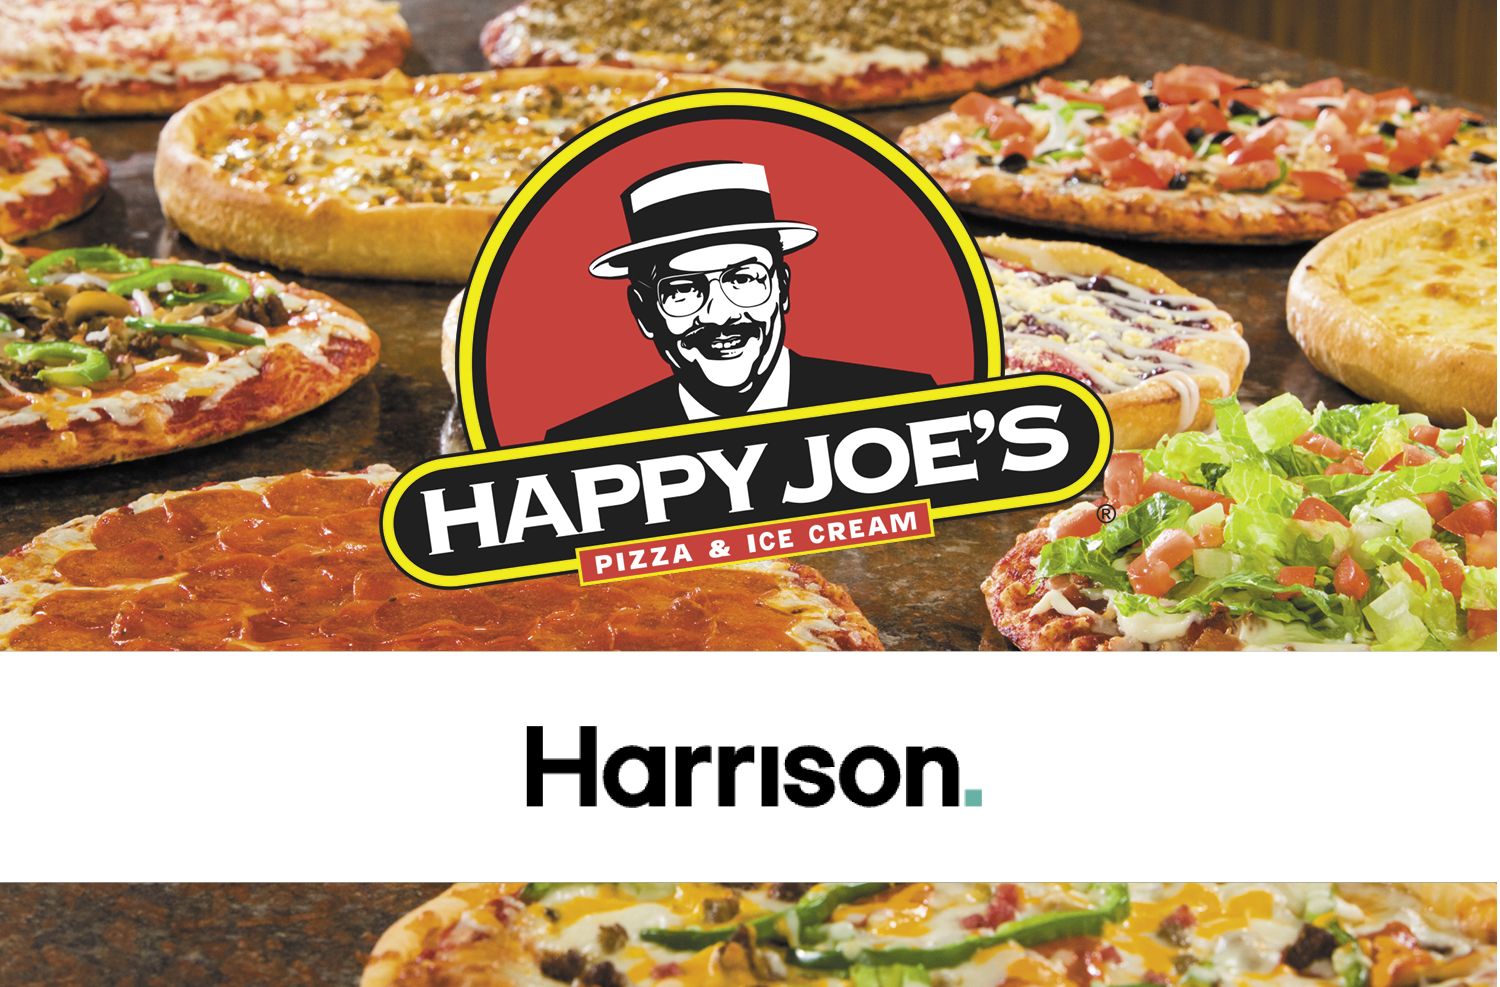 Happy Joe’s Pizza & Ice Cream